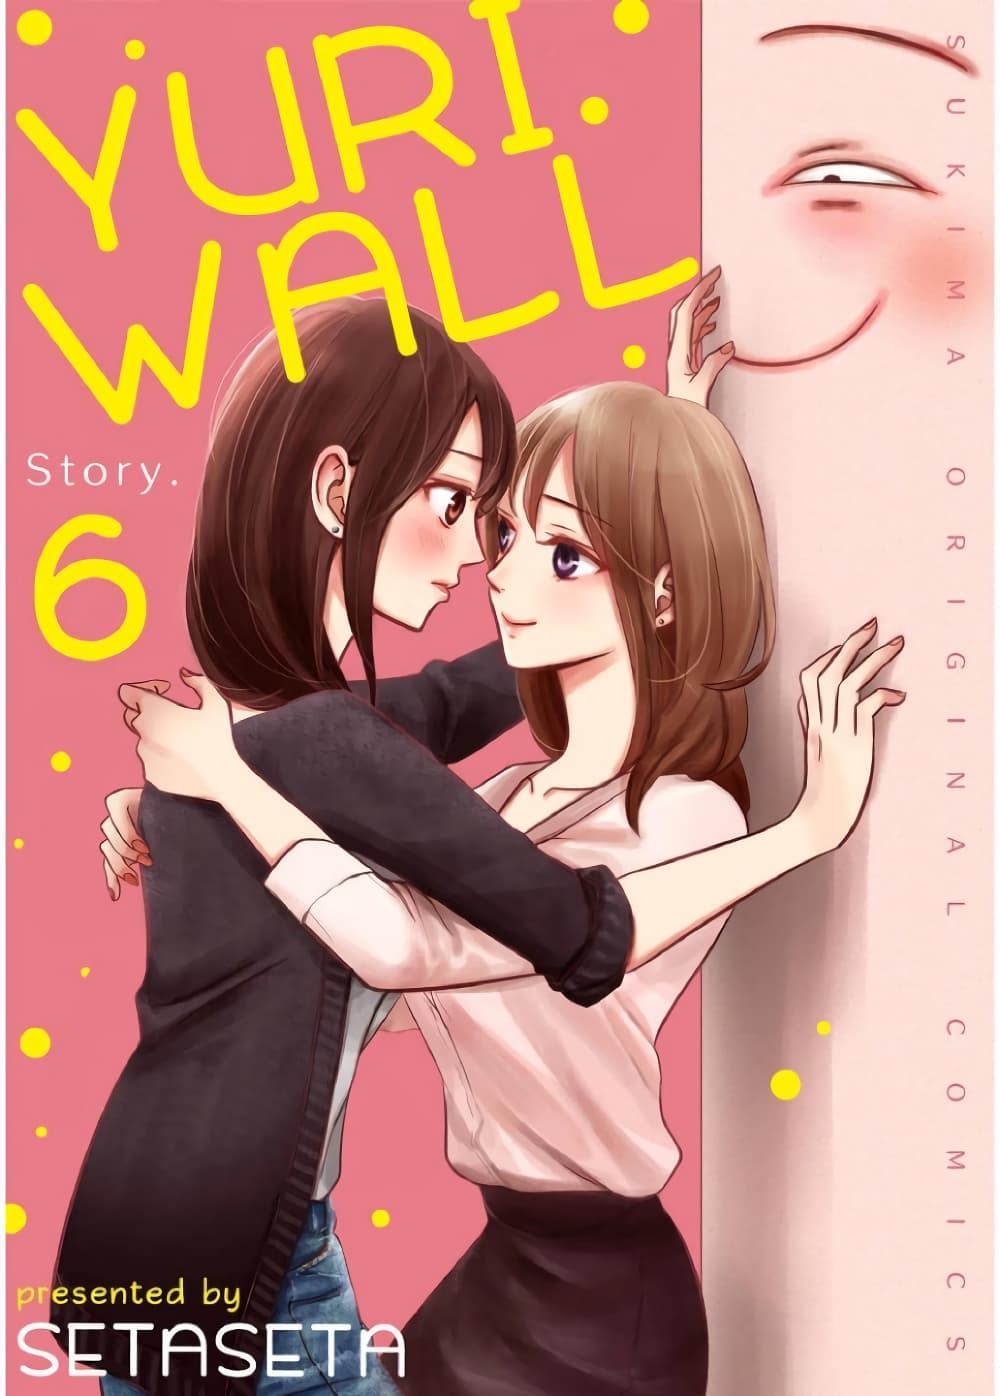 Yuri Wall 6 (1)